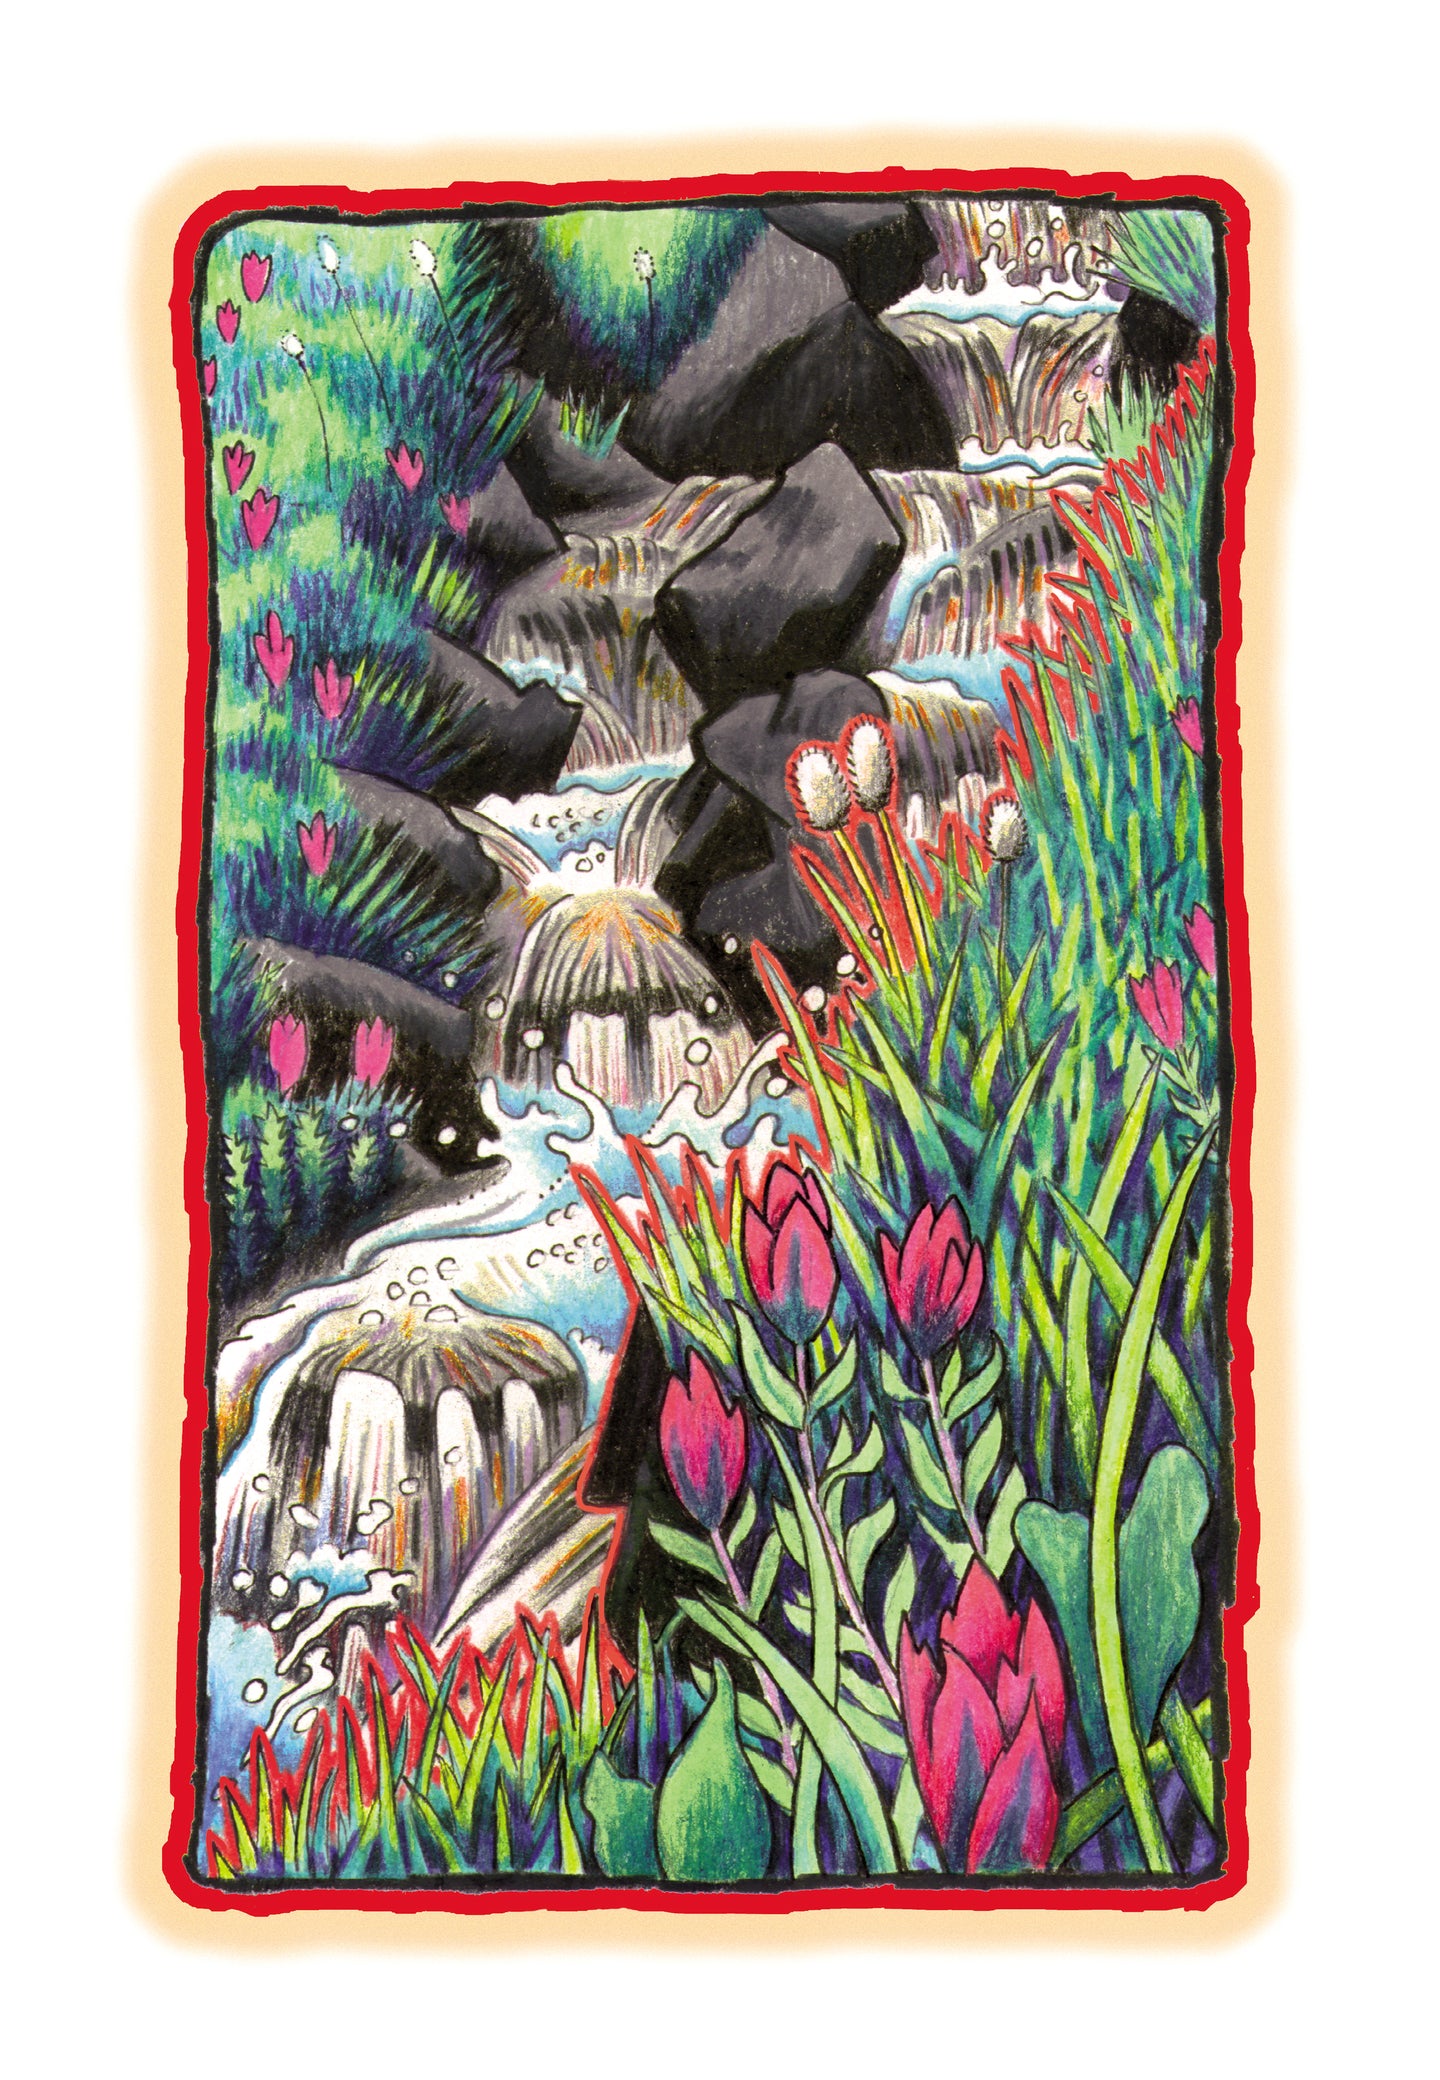 Whale Creek: prints